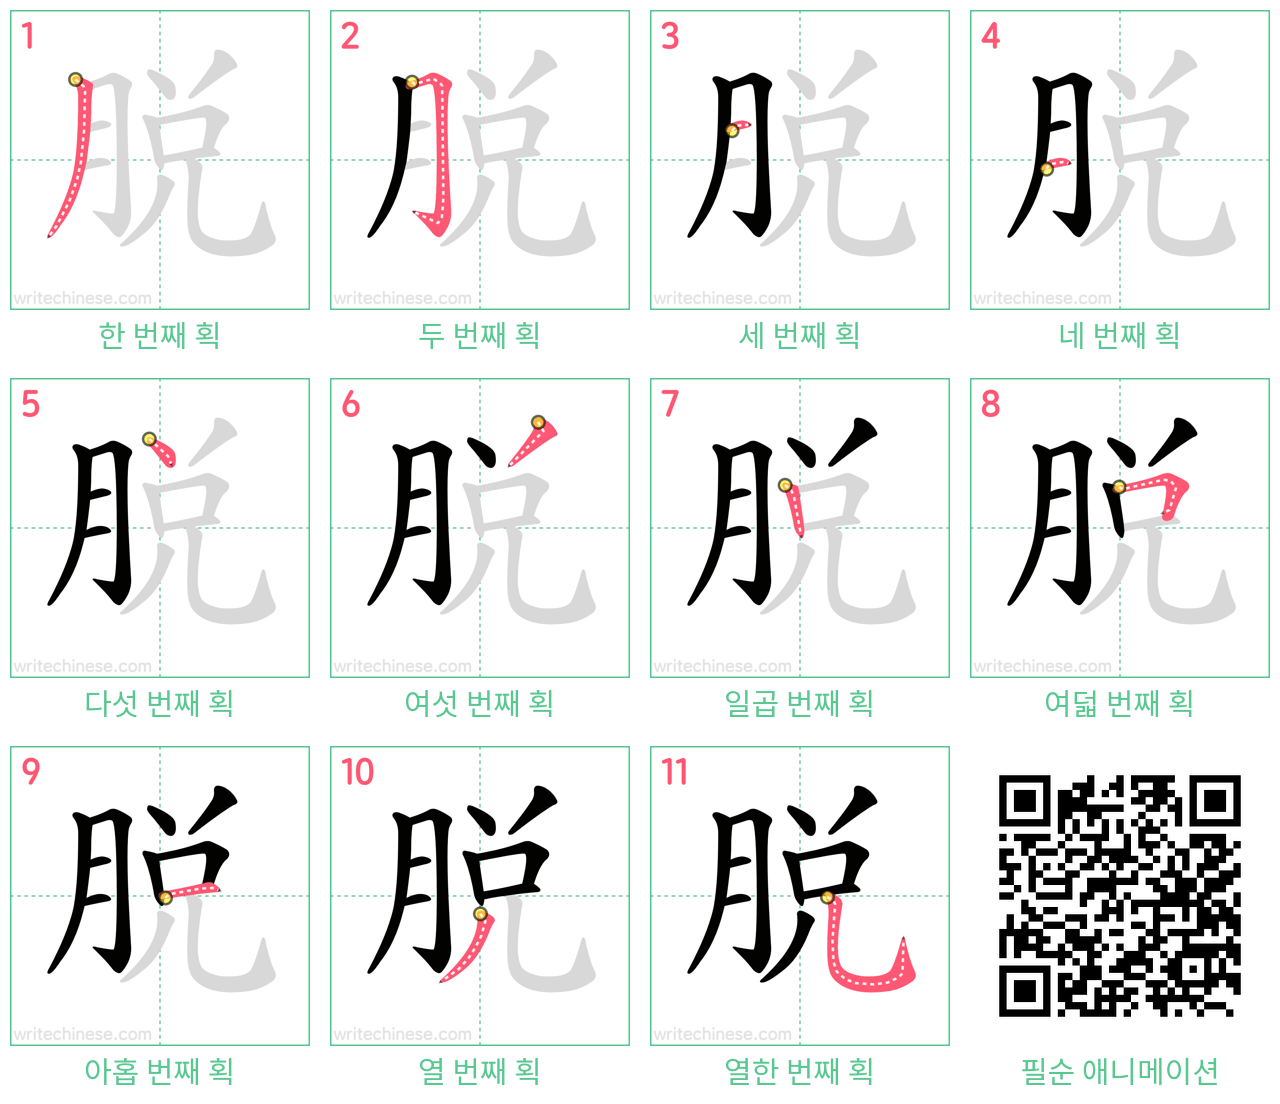 脱 step-by-step stroke order diagrams